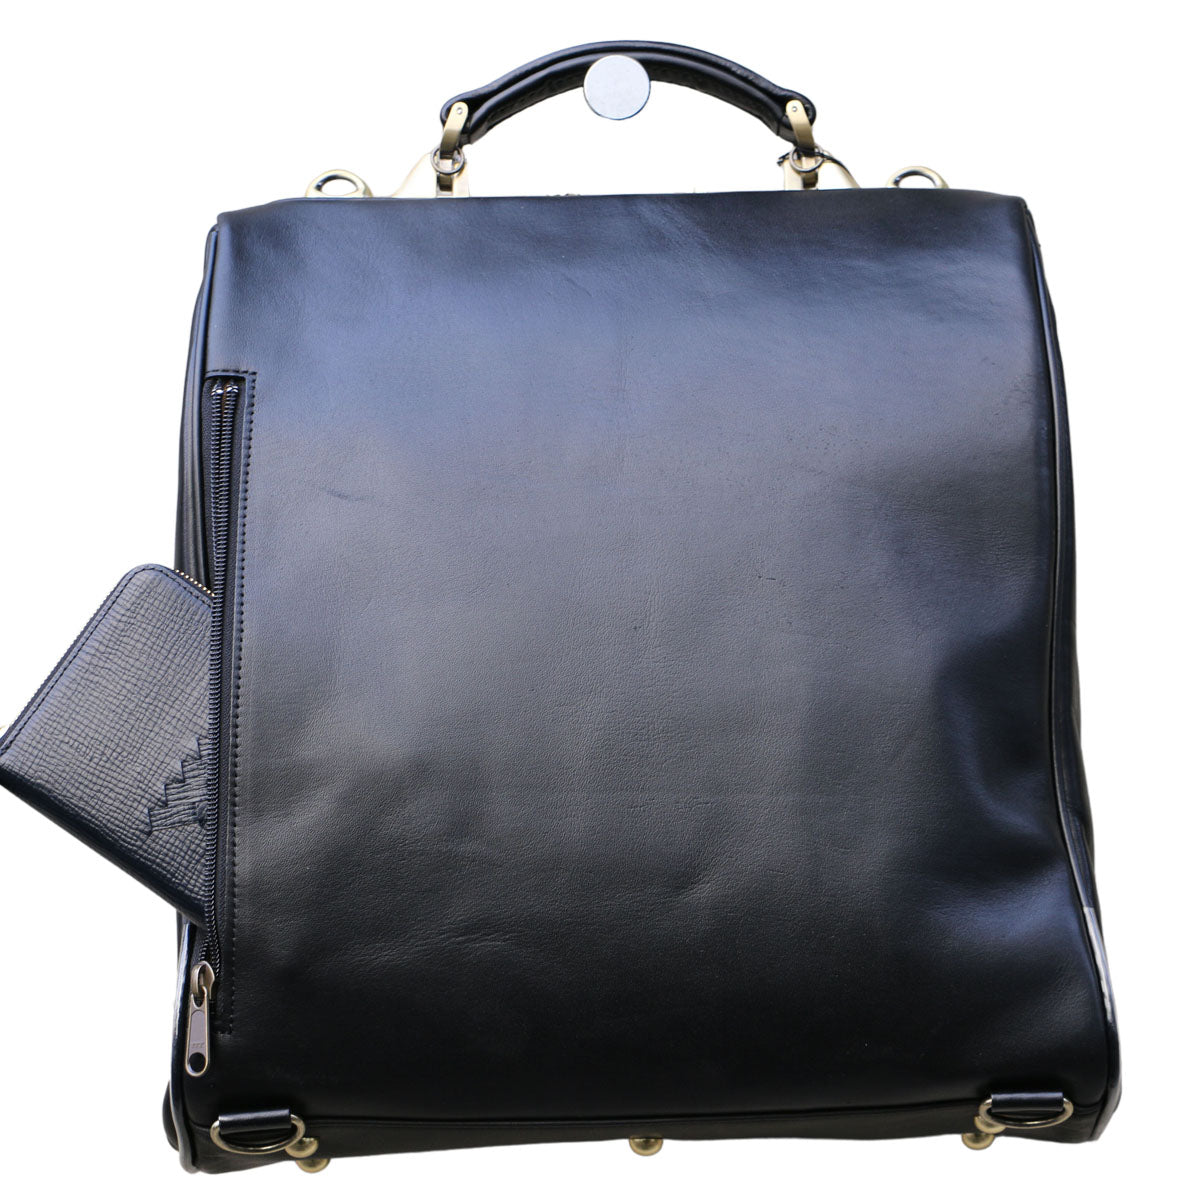 本革 L 豊岡鞄、ダレスバッグ、リュックのYOUTA(ヨウタ)公式通販 – 豊岡鞄認定ダレスバッグ-YOUTA